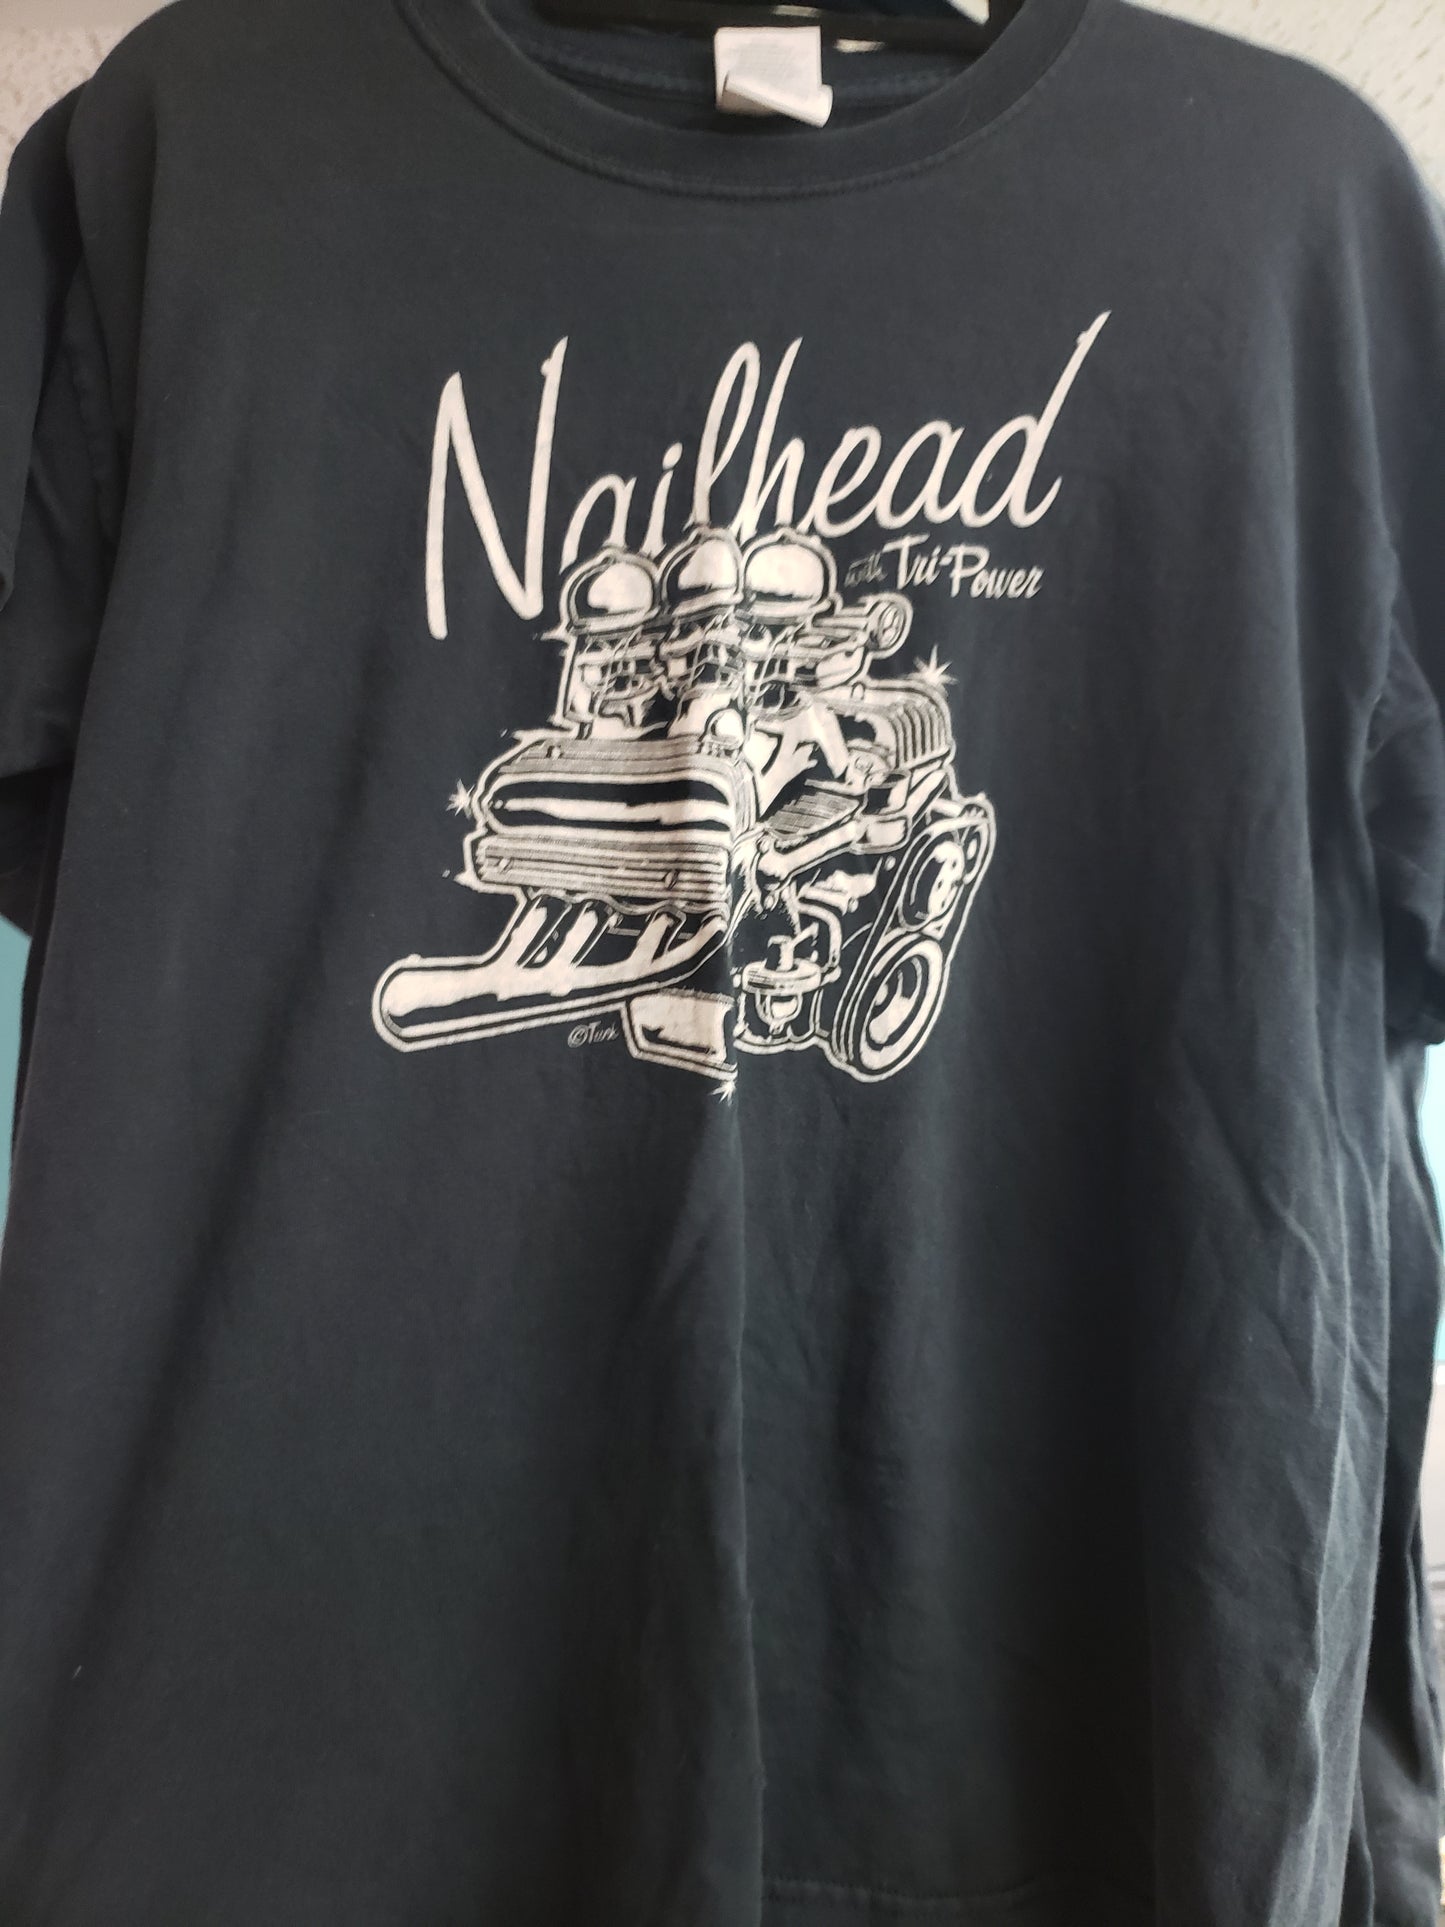 Tuck Nailhead T-shirt size L